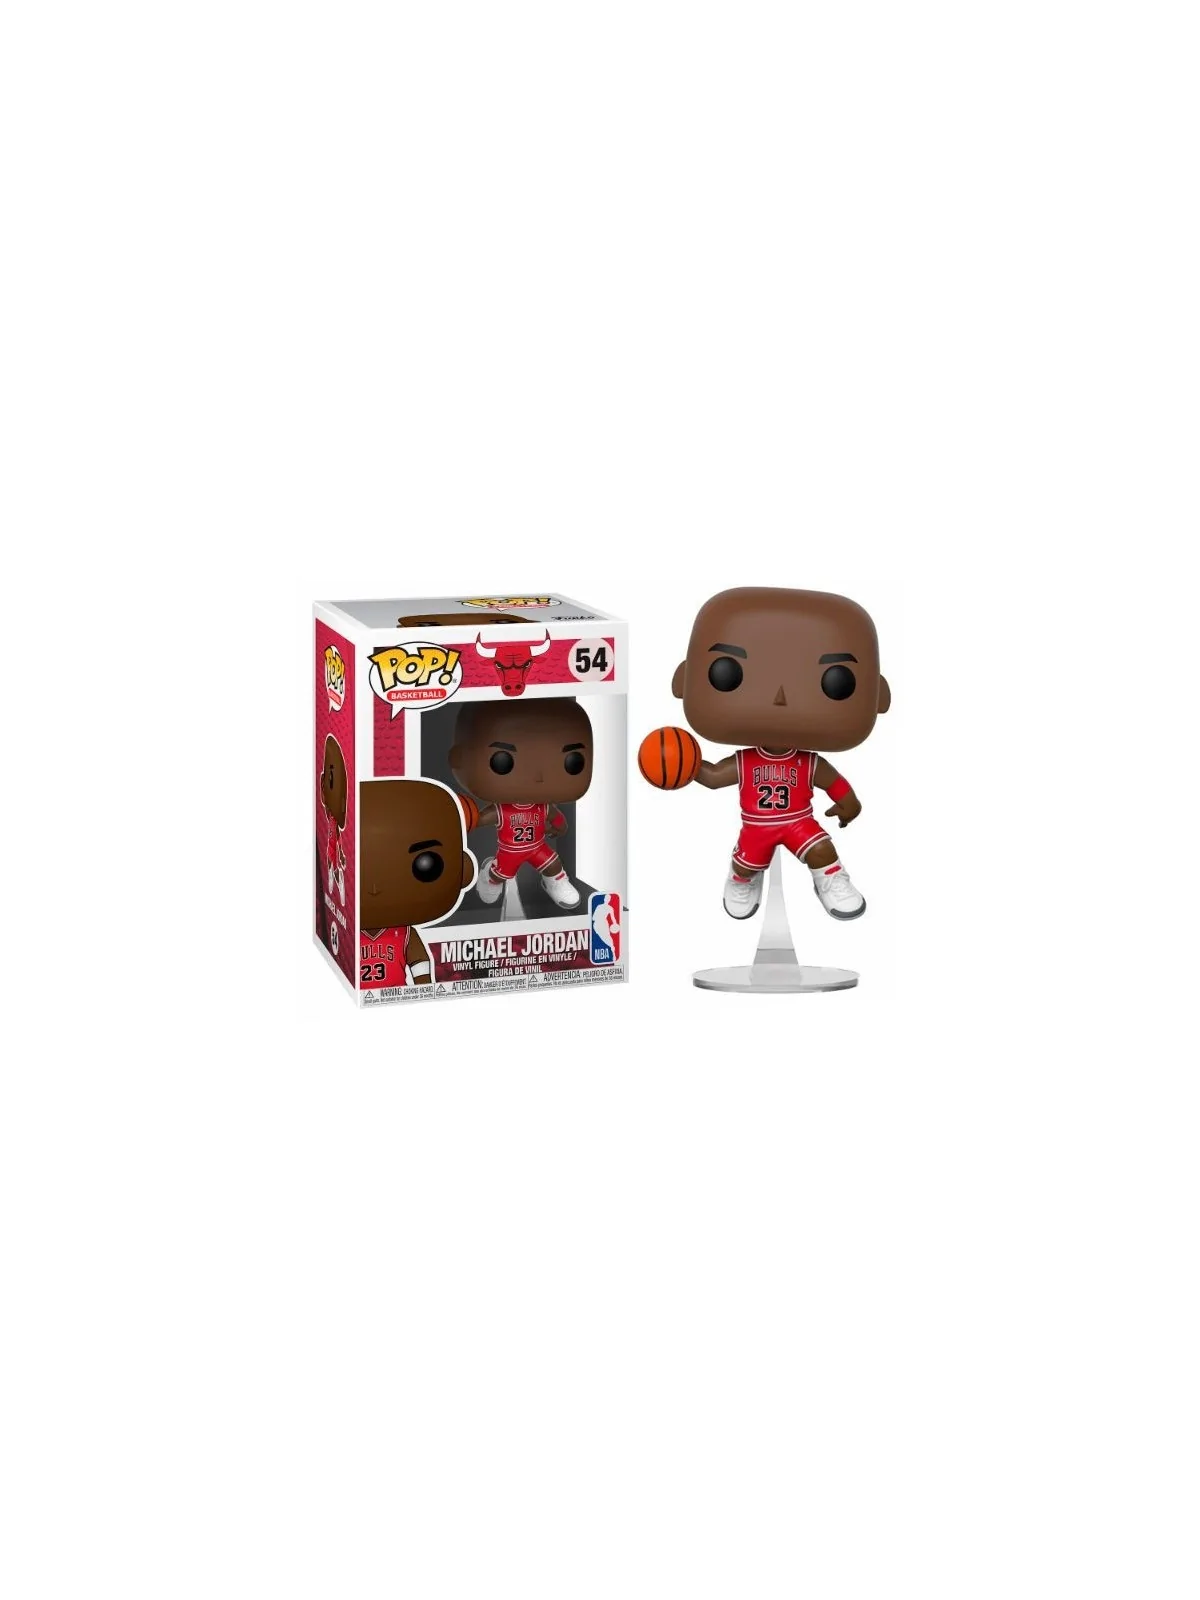 Comprar Funko POP! NBA Bulls Michael Jordan (54) barato al mejor preci